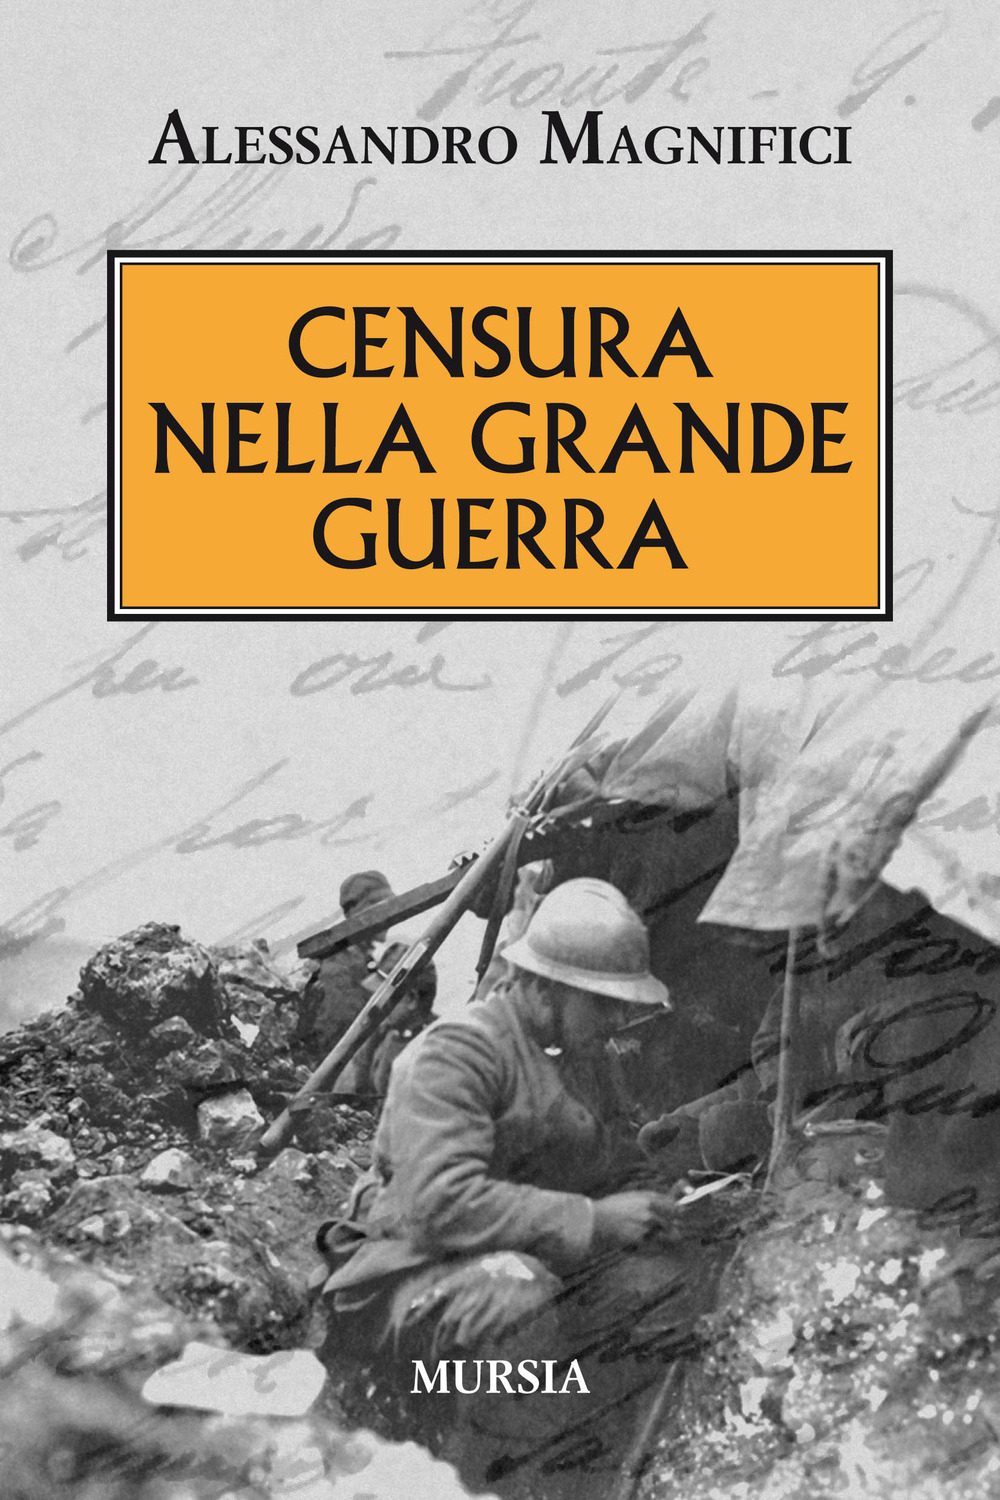 Libri Alessandro Magnifici - Censura Nella Grande Guerra NUOVO SIGILLATO, EDIZIONE DEL 11/01/2019 SUBITO DISPONIBILE